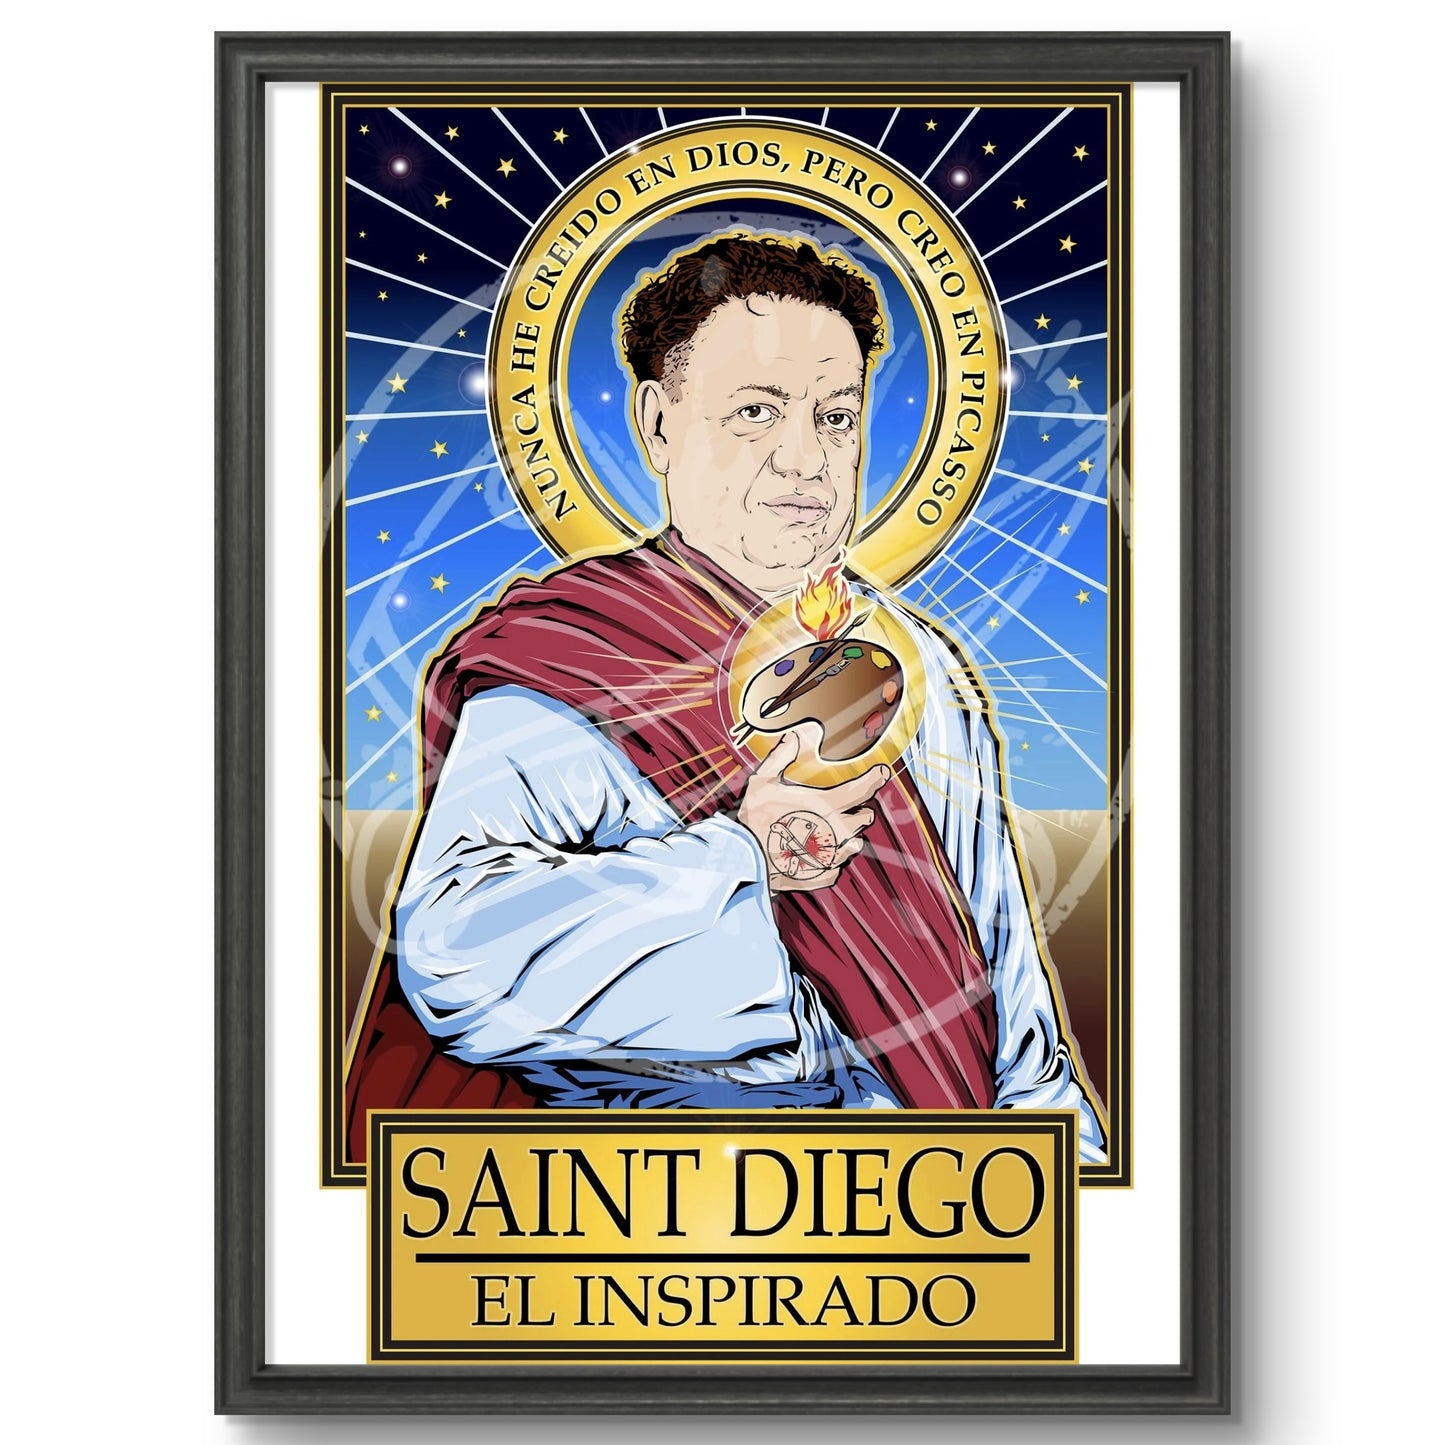 Saint Diego El Inspirado Poster Cleaverandblade.com